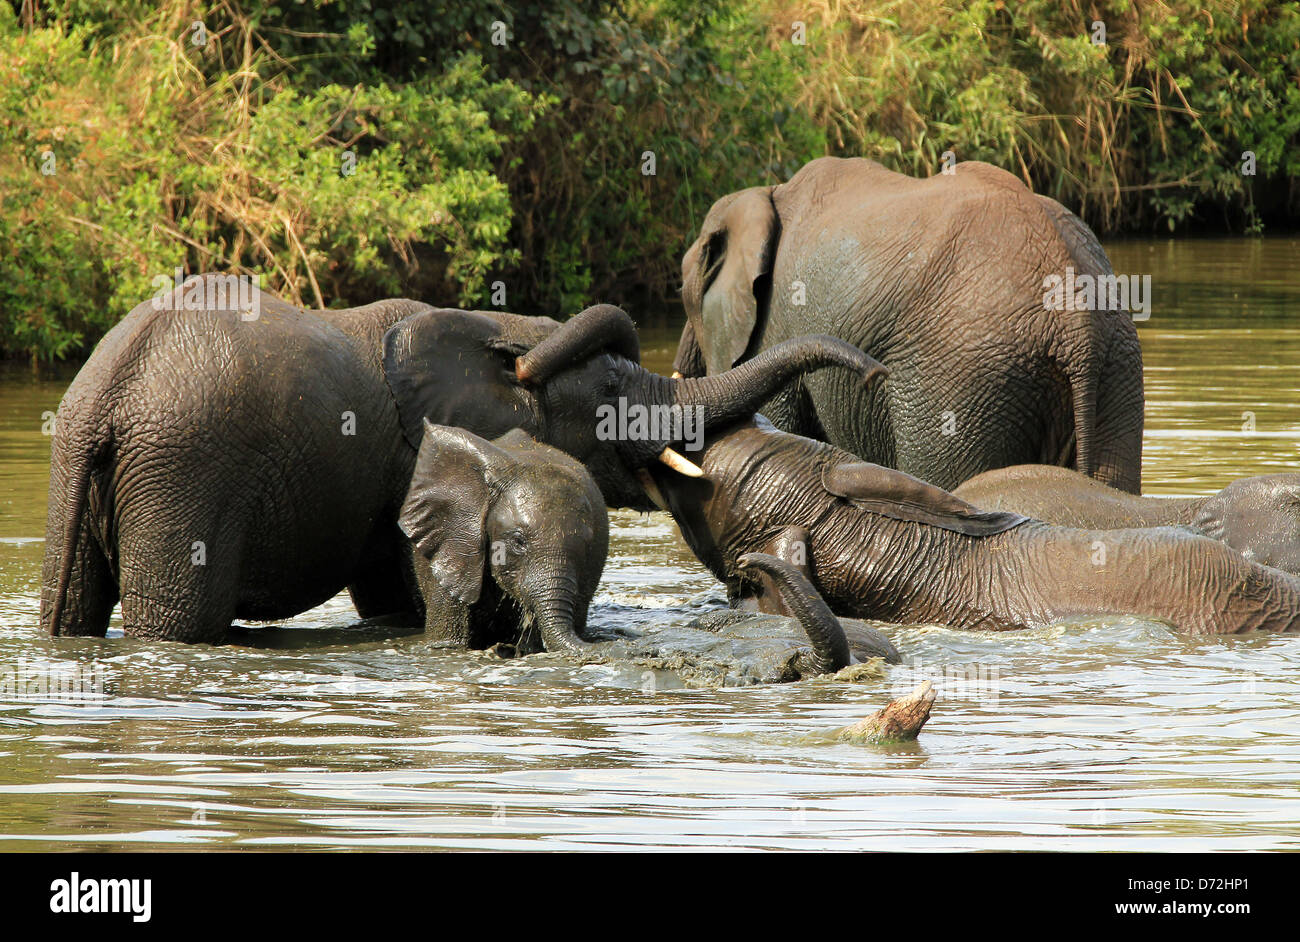 El elefante africano (Loxodonta Africana) luchando en el Barro, el Serengueti, Tanzania Foto de stock